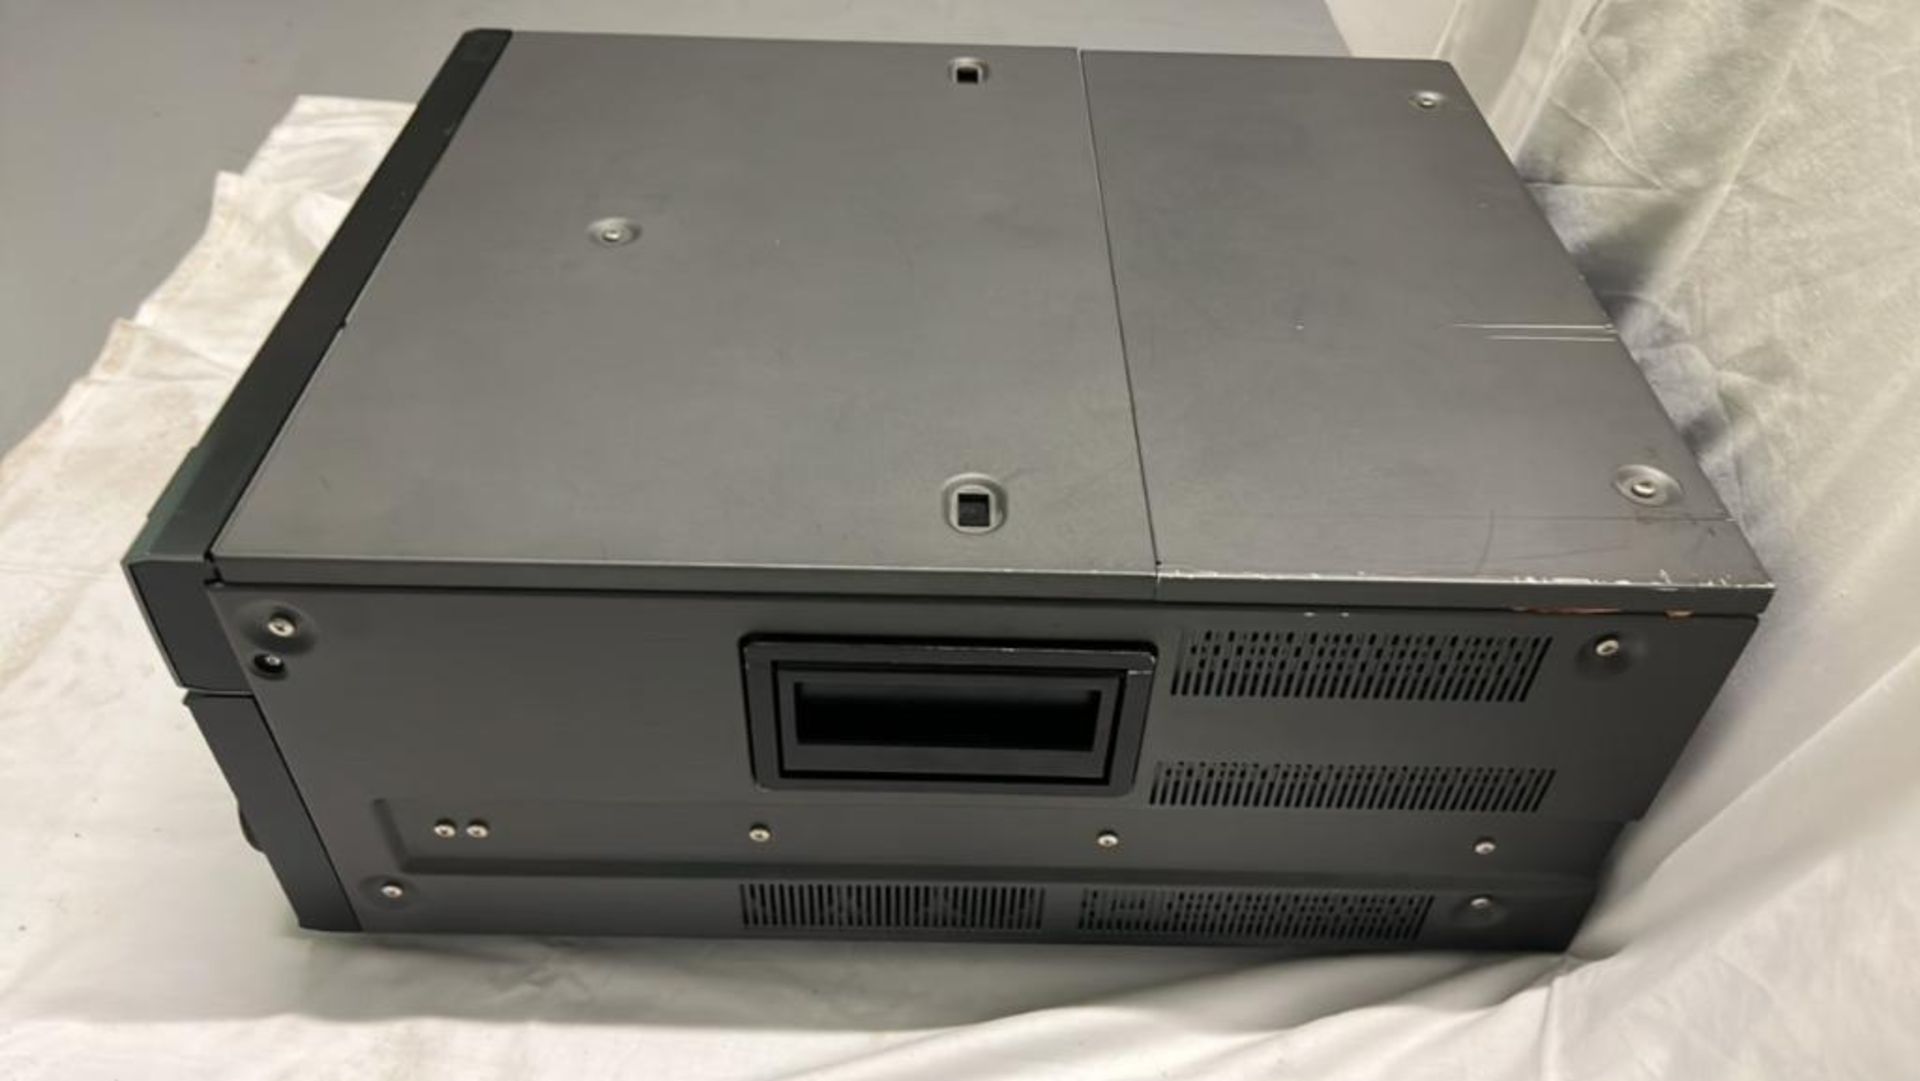 Sony SRW-5800/2 HDCAM Studio Recorder with flight case SN: 12335 - Image 3 of 8